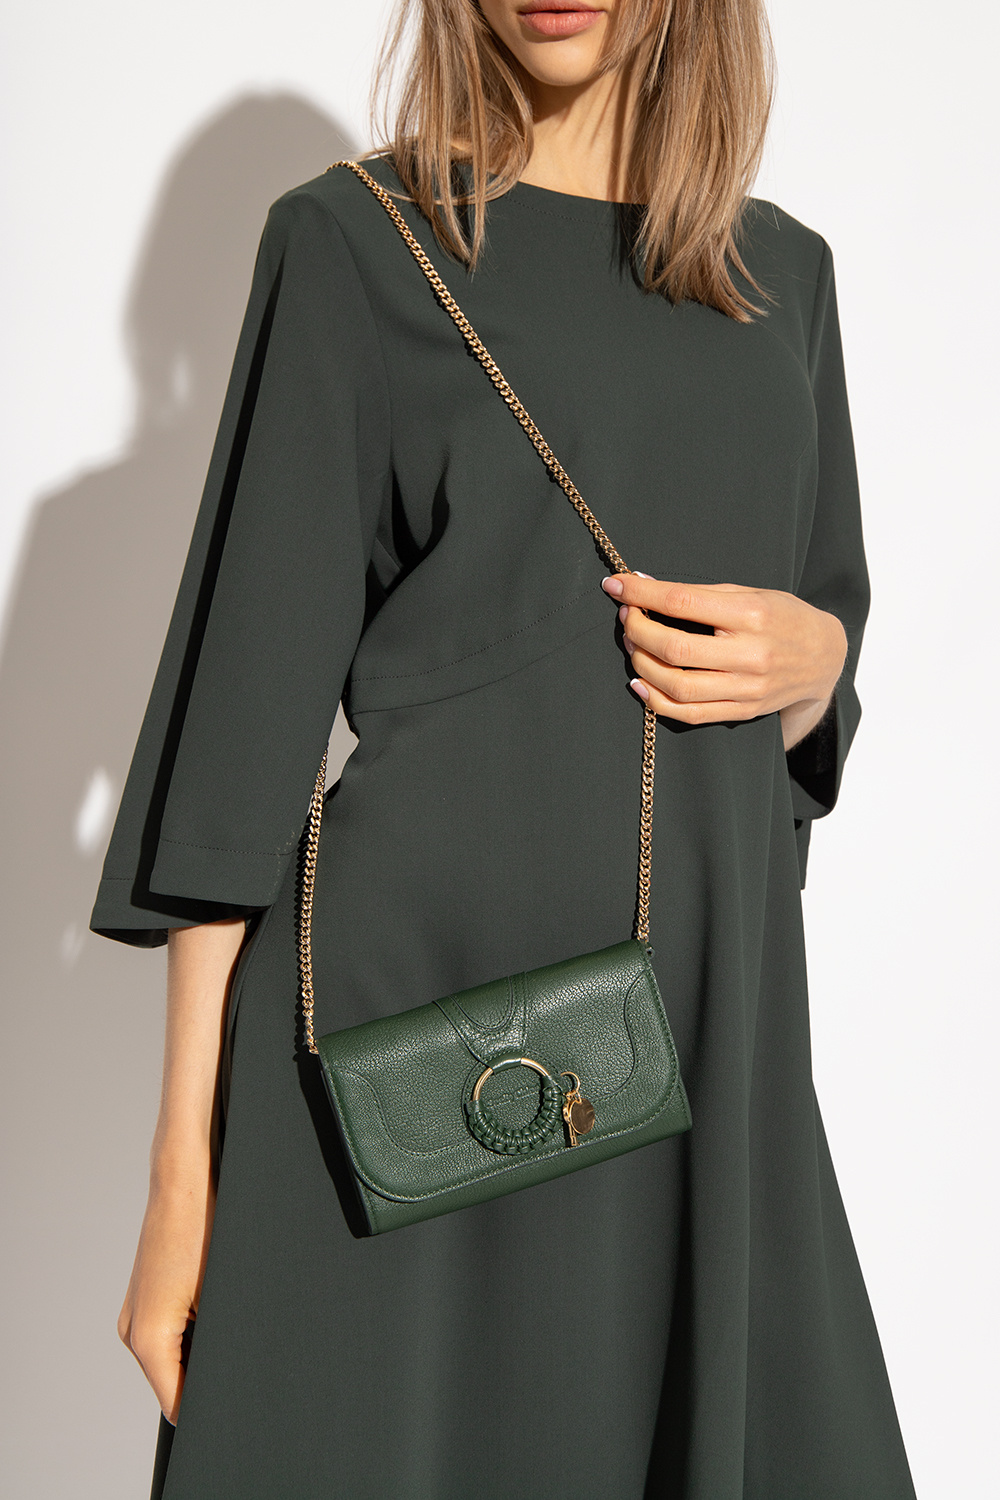 chloe marcie shoulder bag in brown grained leather - Green 'Hana